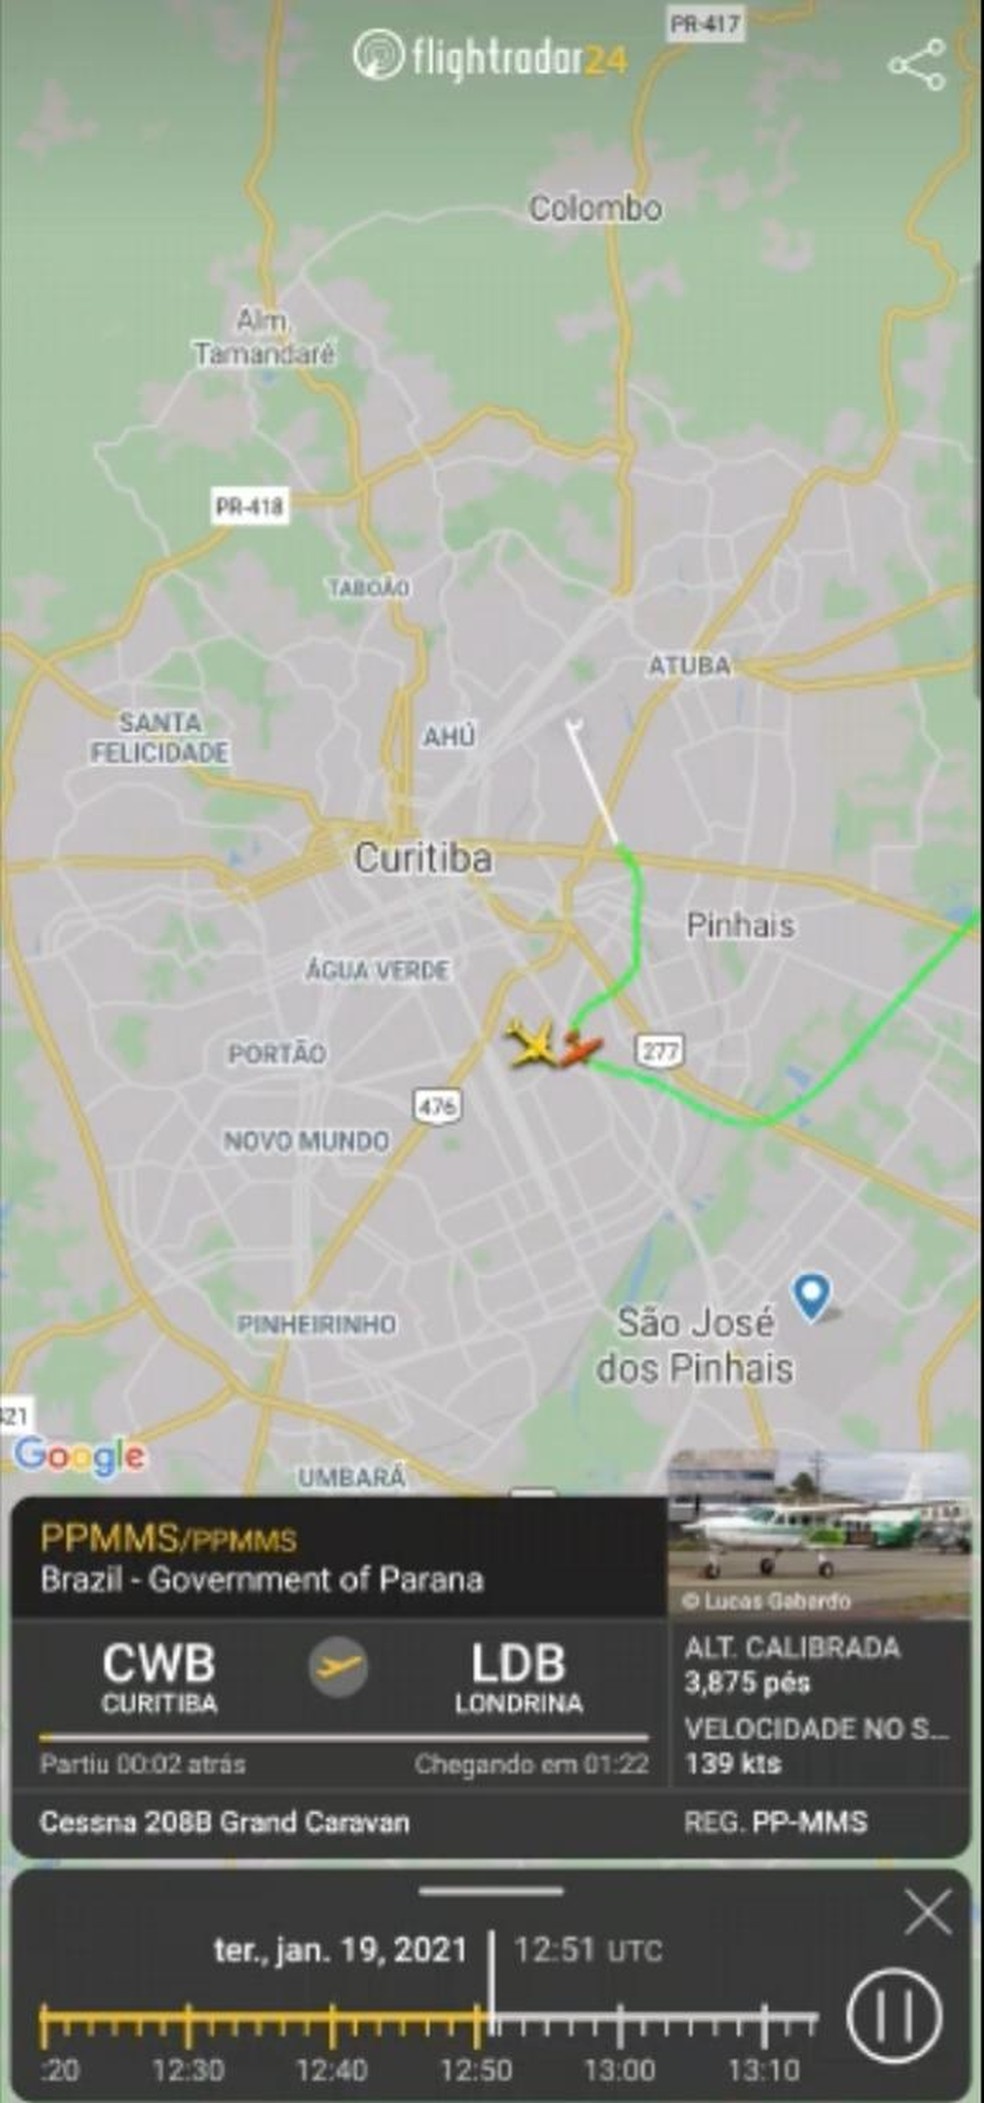 Imagem do site de monitoramento Flightradar24 mostra a proximidade das duas aeronaves — Foto: Reprodução